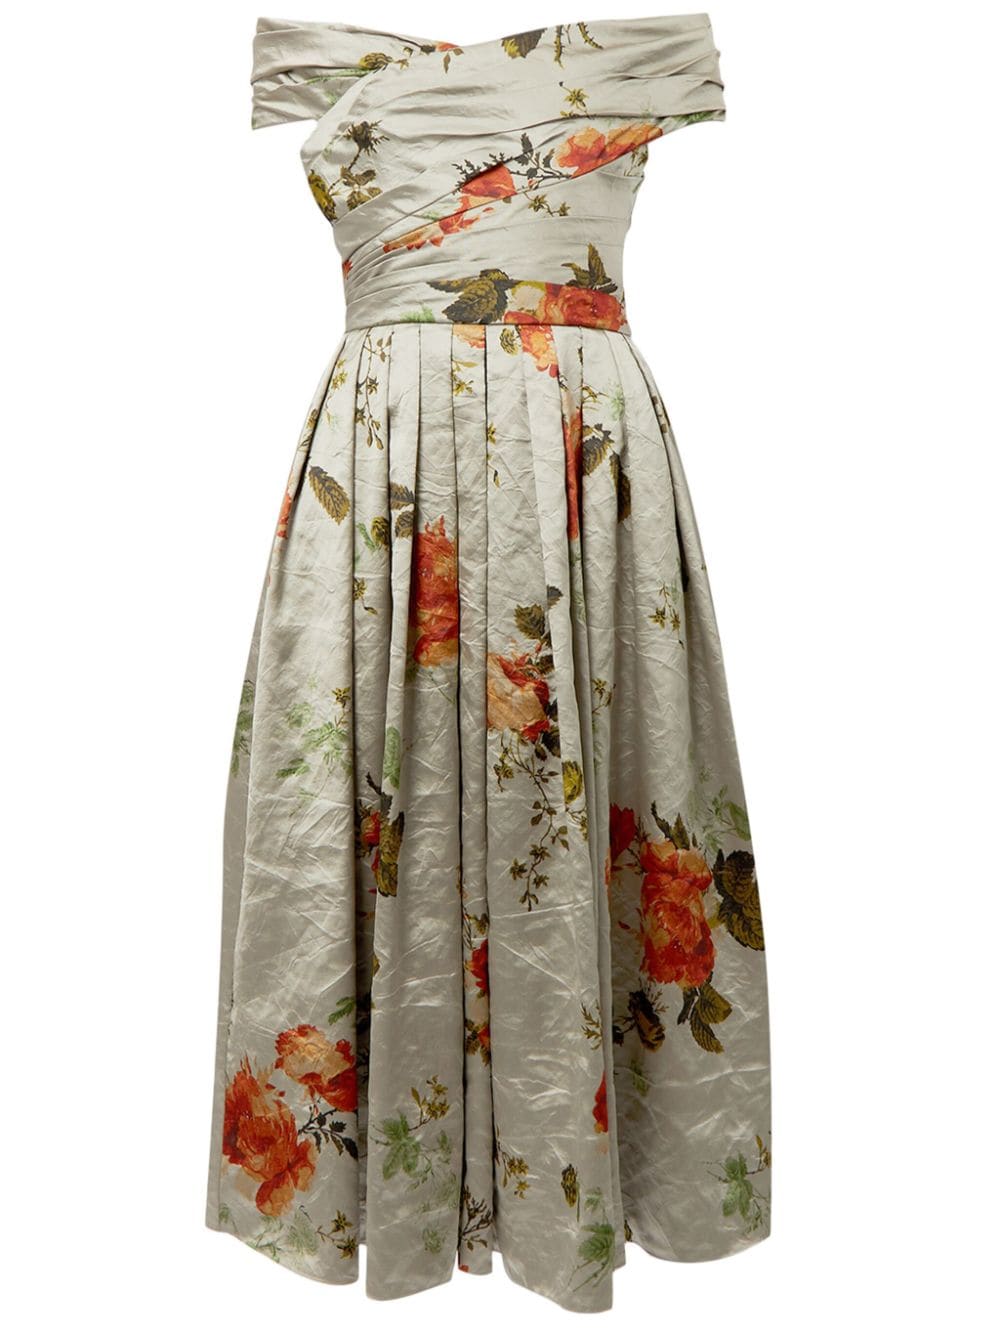 ERDEM off-shoulder floral-print satin dress - Neutrals